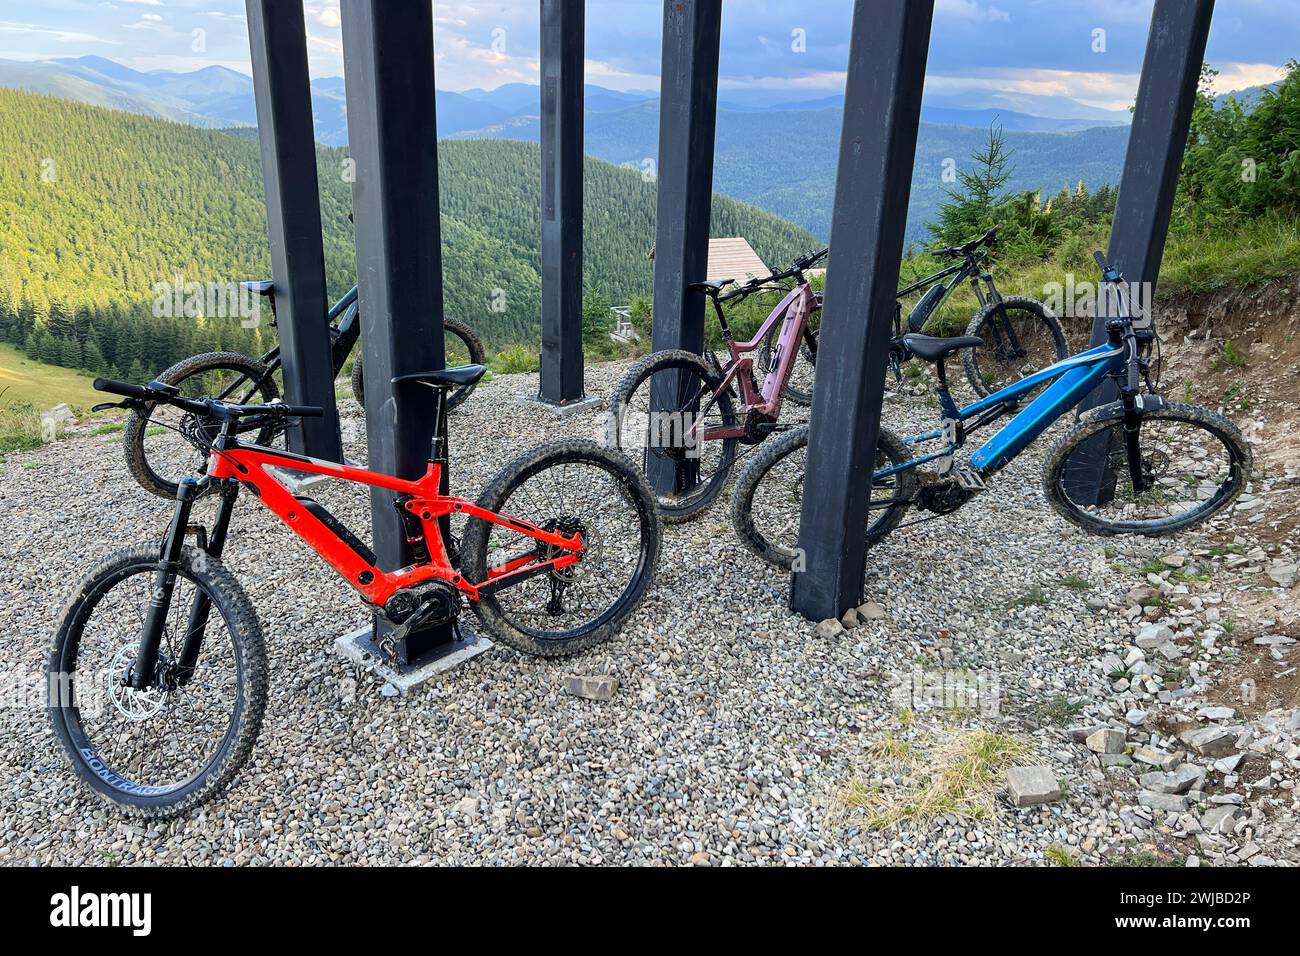 Sammlung von Elektro-Mountainbikes, die auf einem kiesbedeckten Boden in den Bergen geparkt sind. MTB-Bikes befinden sich unter einer Struktur mit dicken schwarzen Säulen. Stockfoto